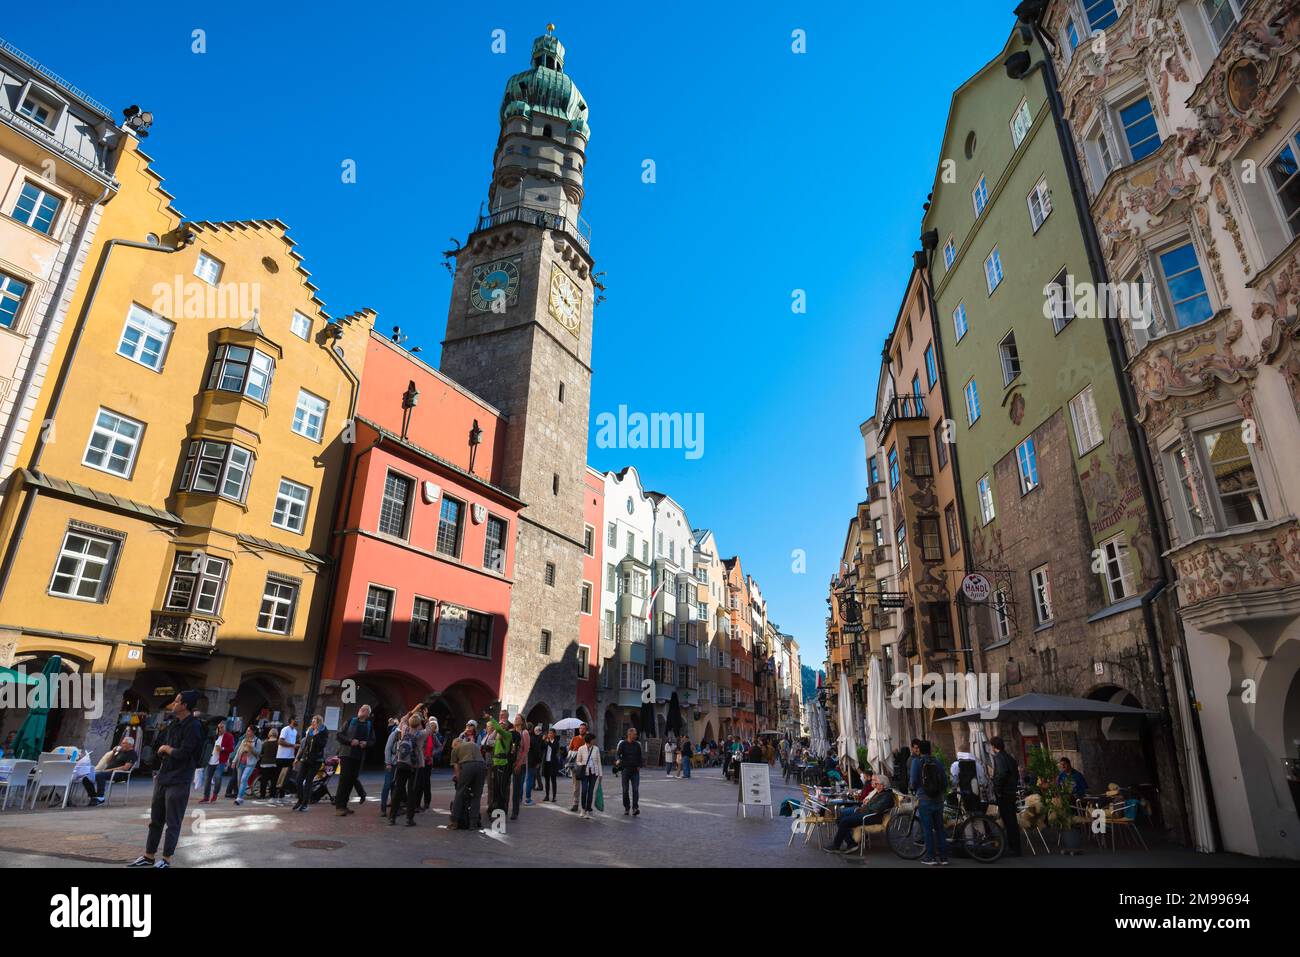 Vieille ville d'Innsbruck, vue en été sur Herzog Friedrich Strasse, la principale rue commerçante du centre de la vieille ville (Altstadt) d'Innsbruck, Autriche Banque D'Images